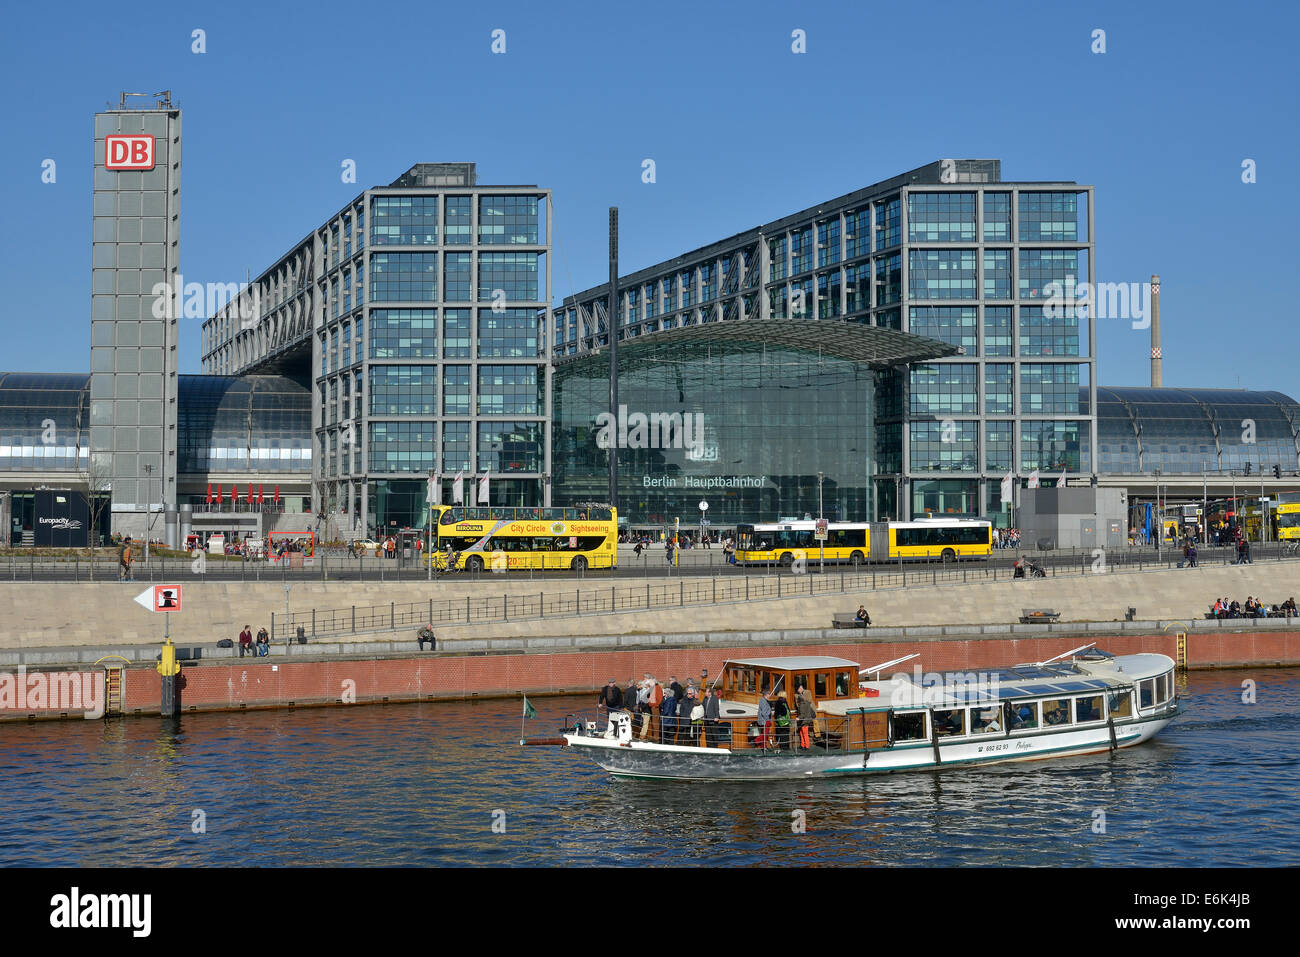 Excursión en barco por el río Spree en frente de la estación principal de tren Hauptbahnhof Berlín, Berlín, Alemania Foto de stock